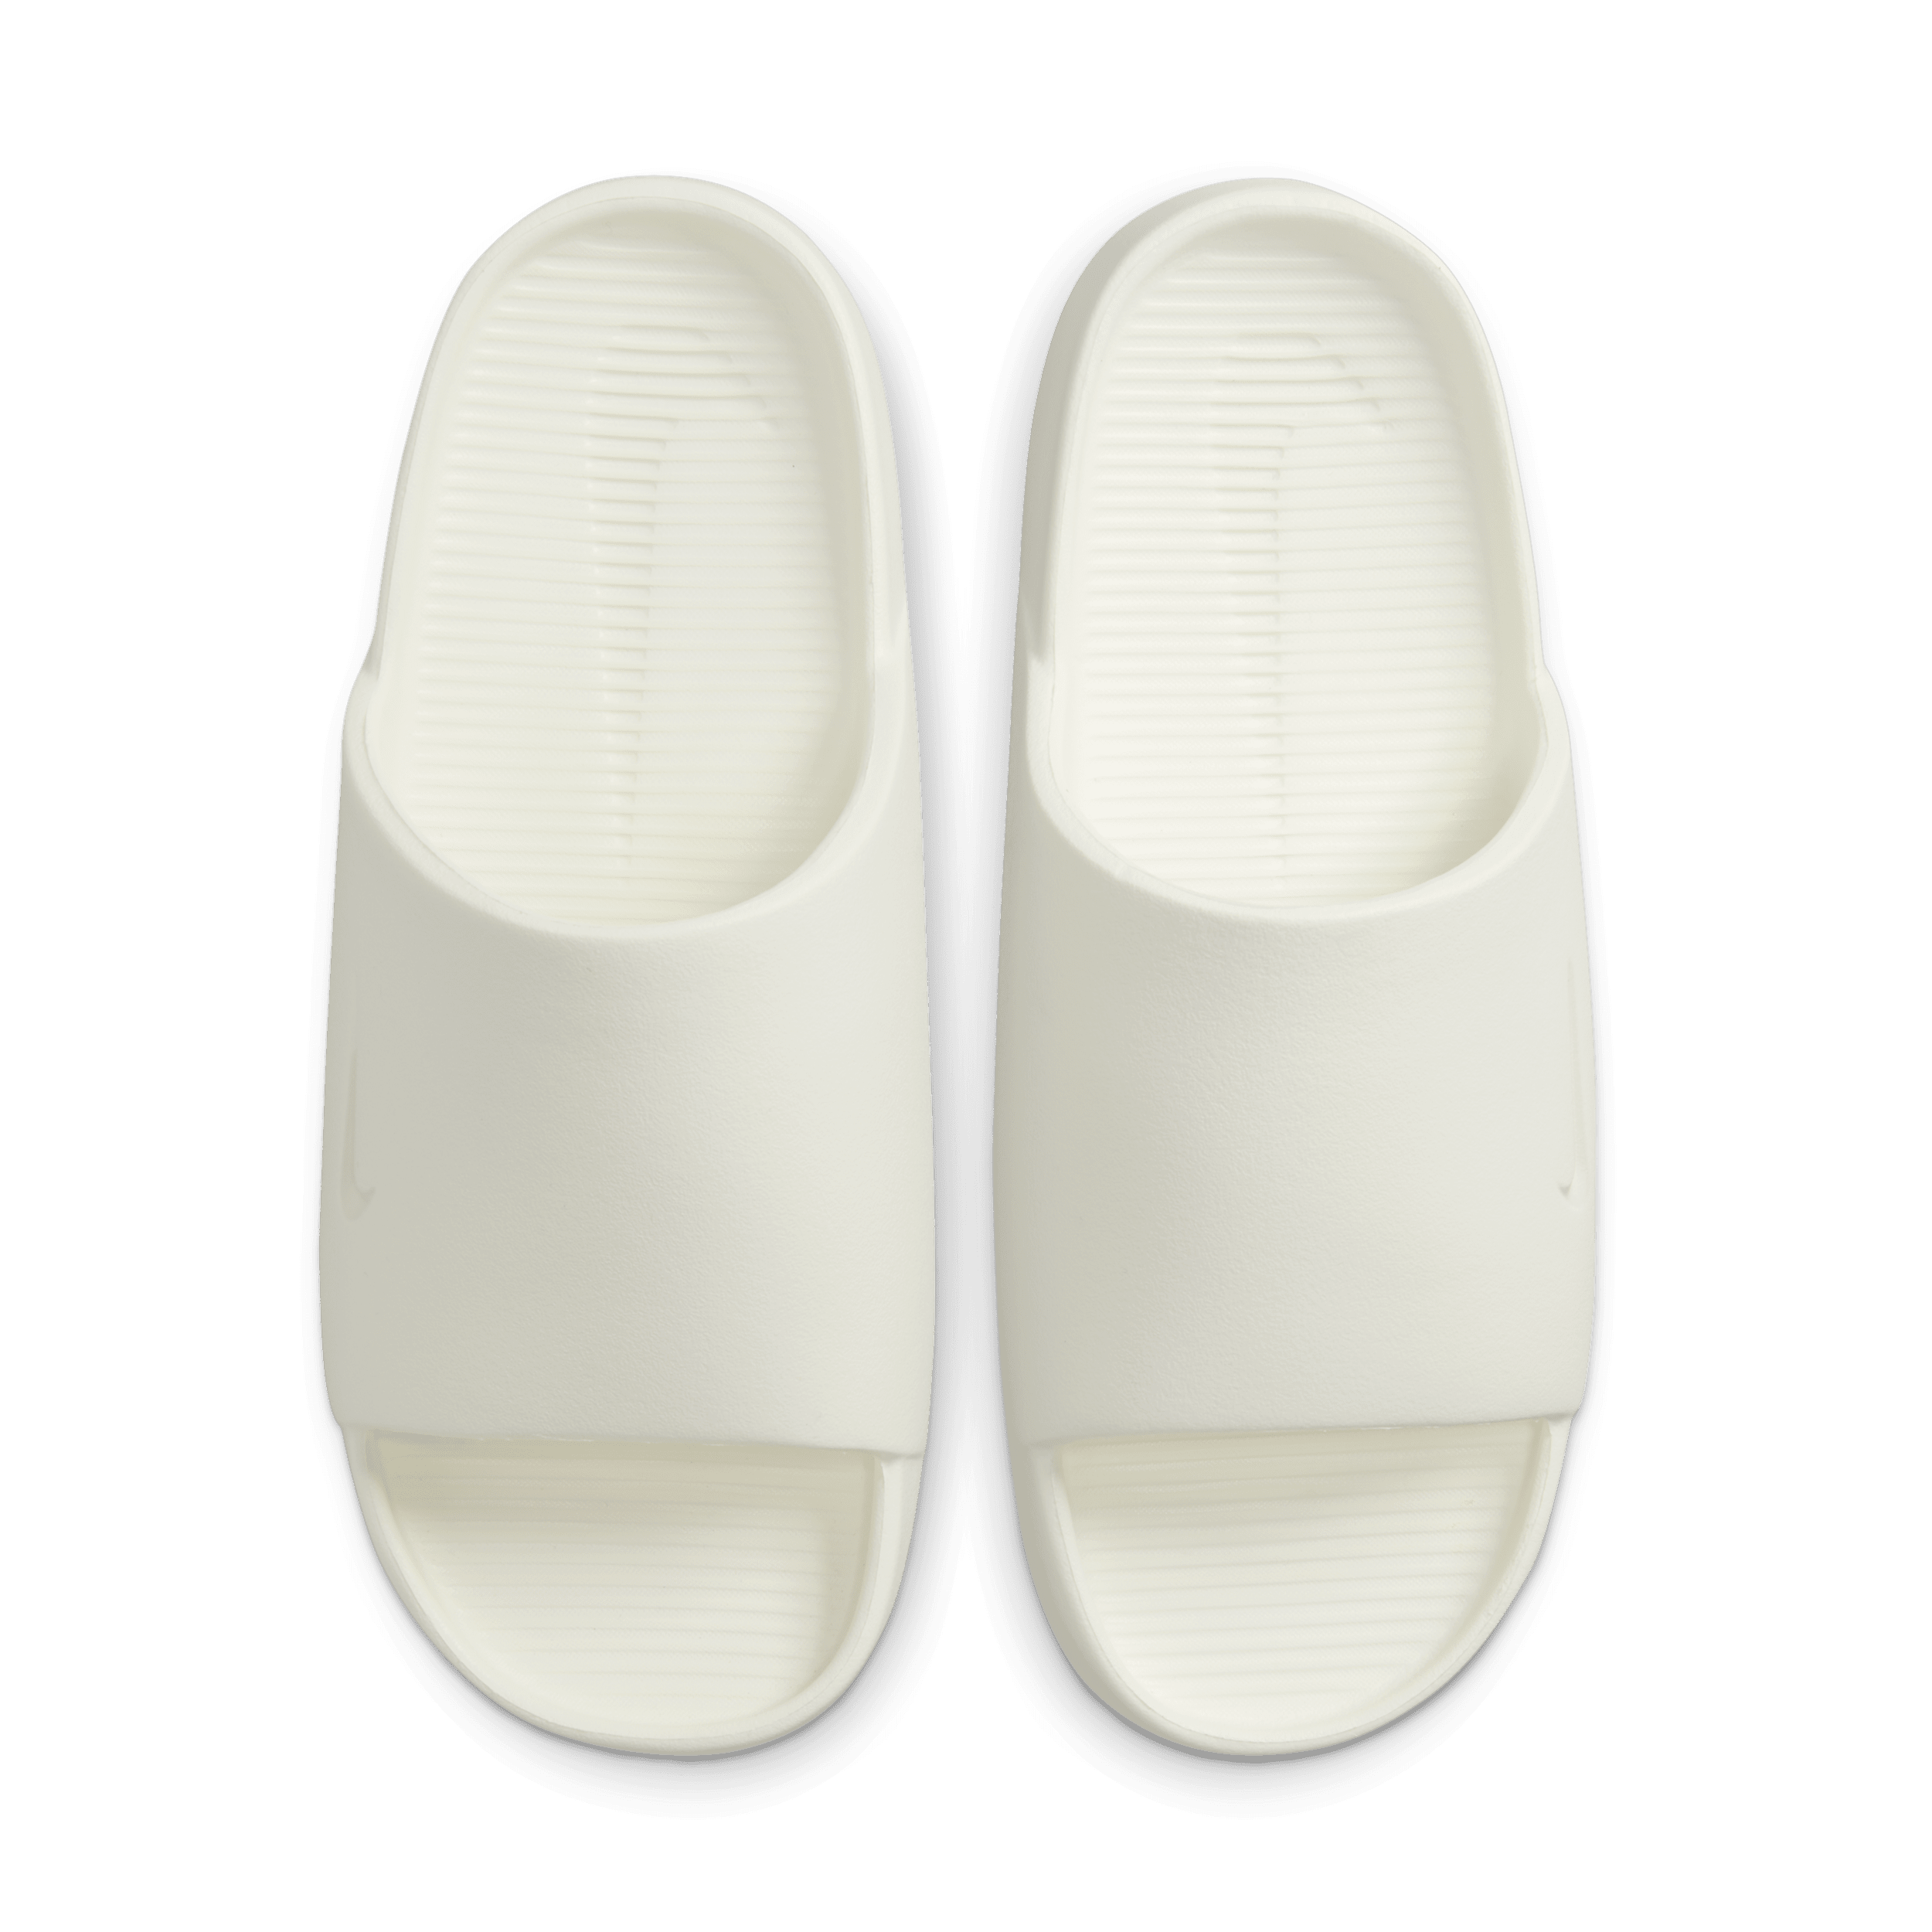 Nike Calm Damen-Slides - Weiß